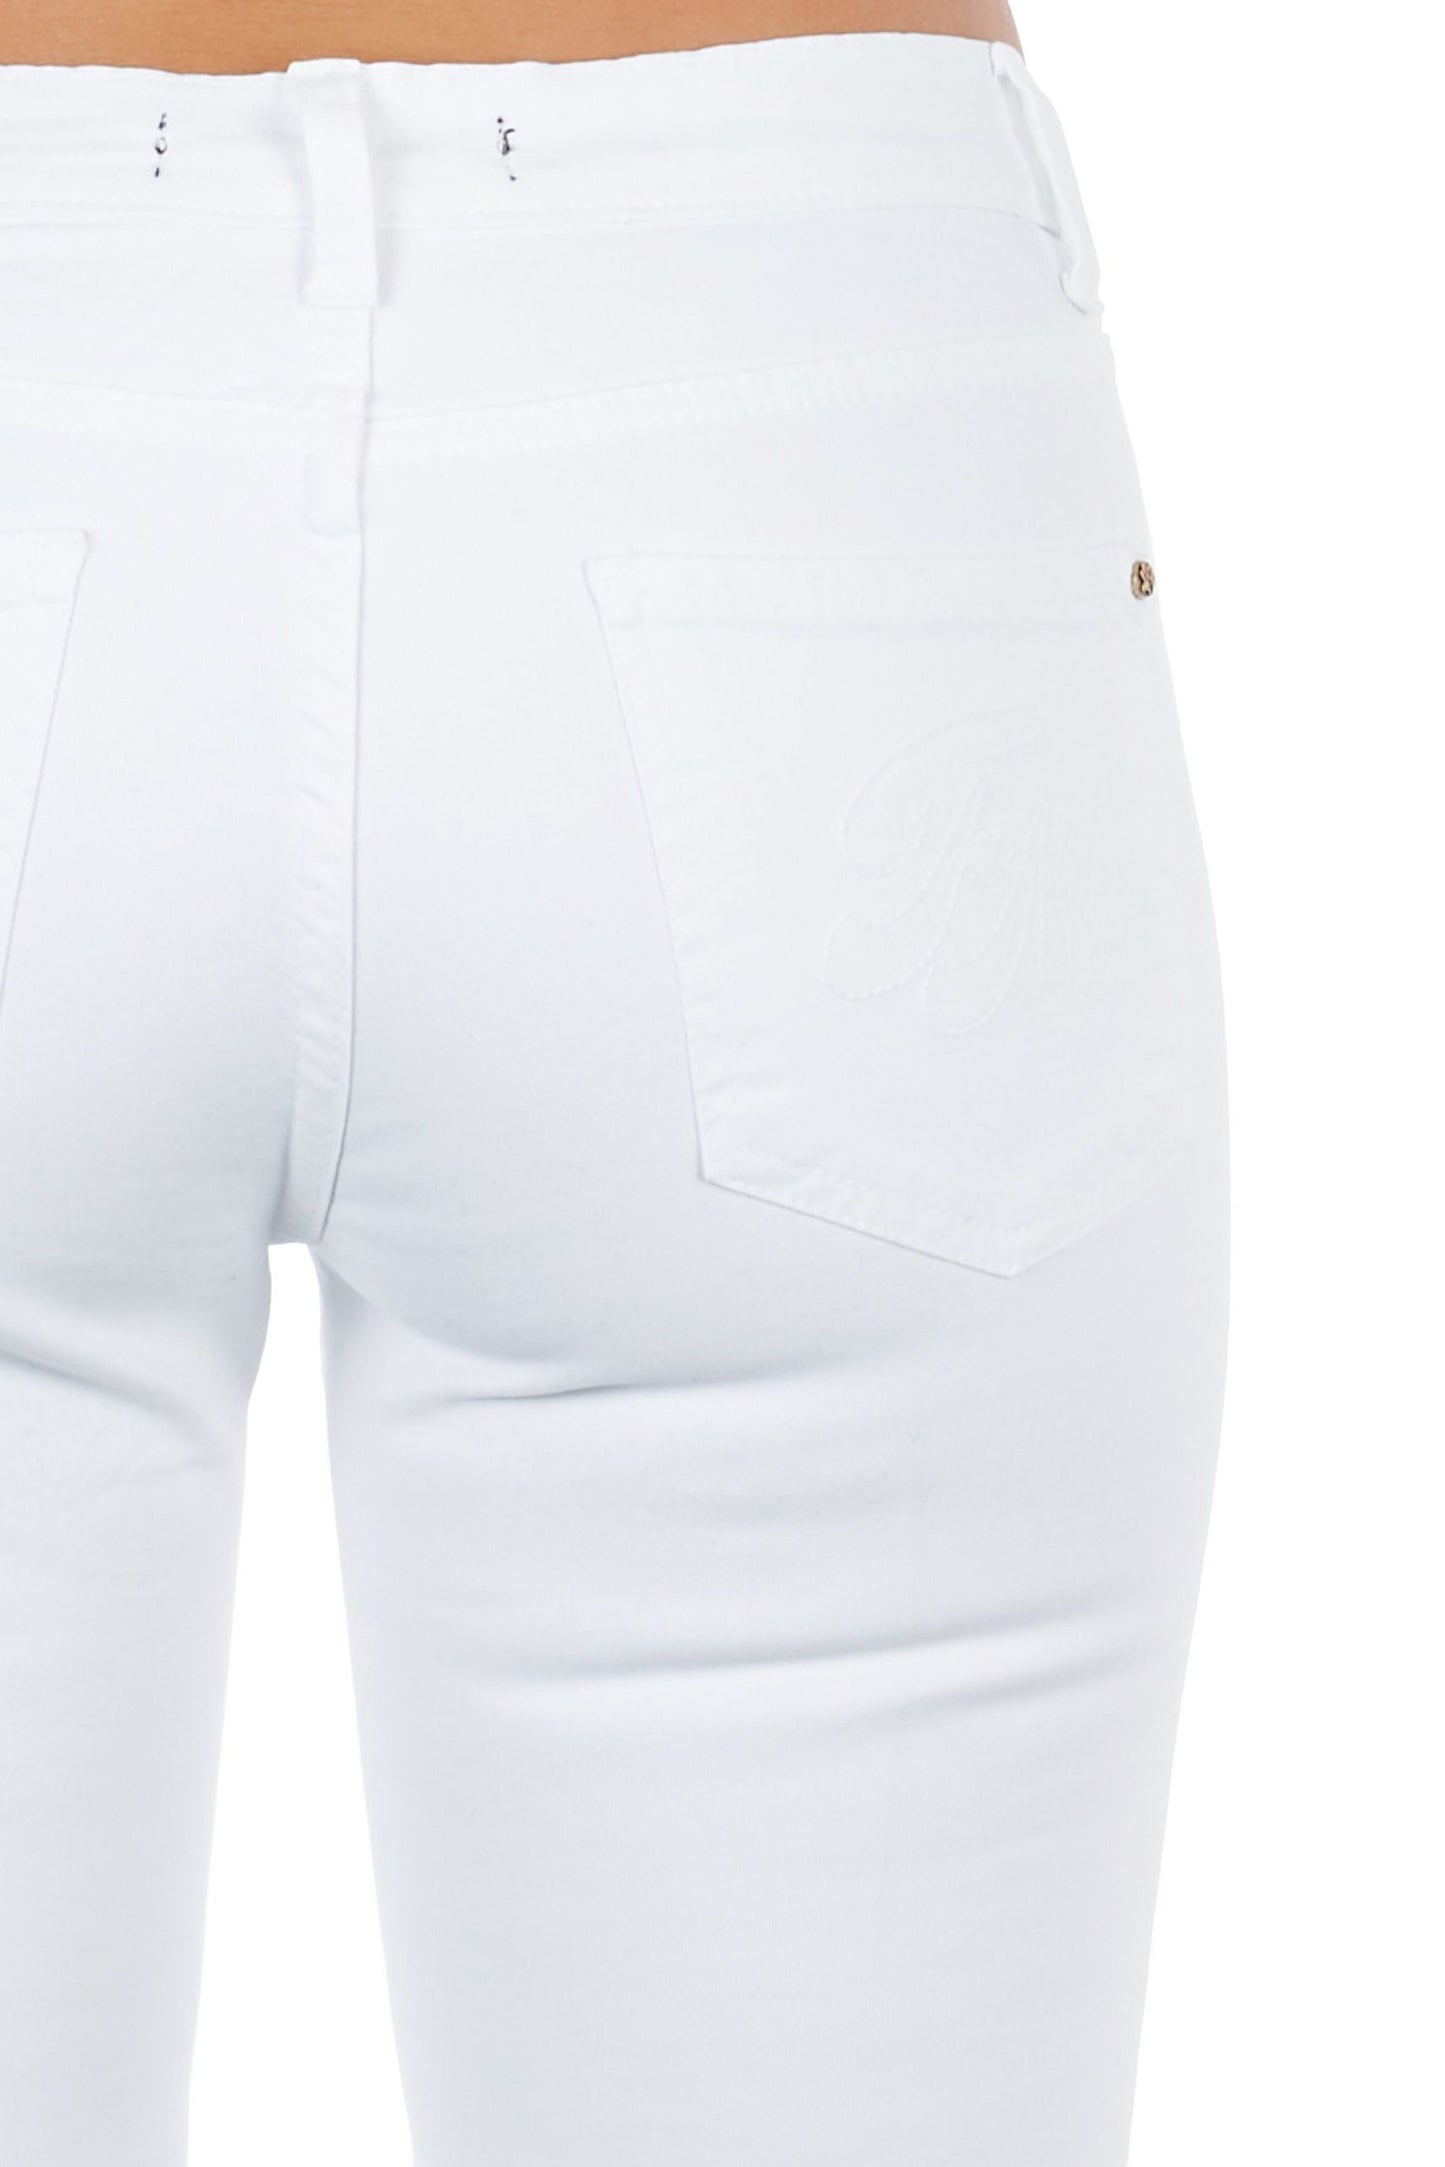 Frankie Morello White Cotton Jeans & Pant - DEA STILOSA MILANO